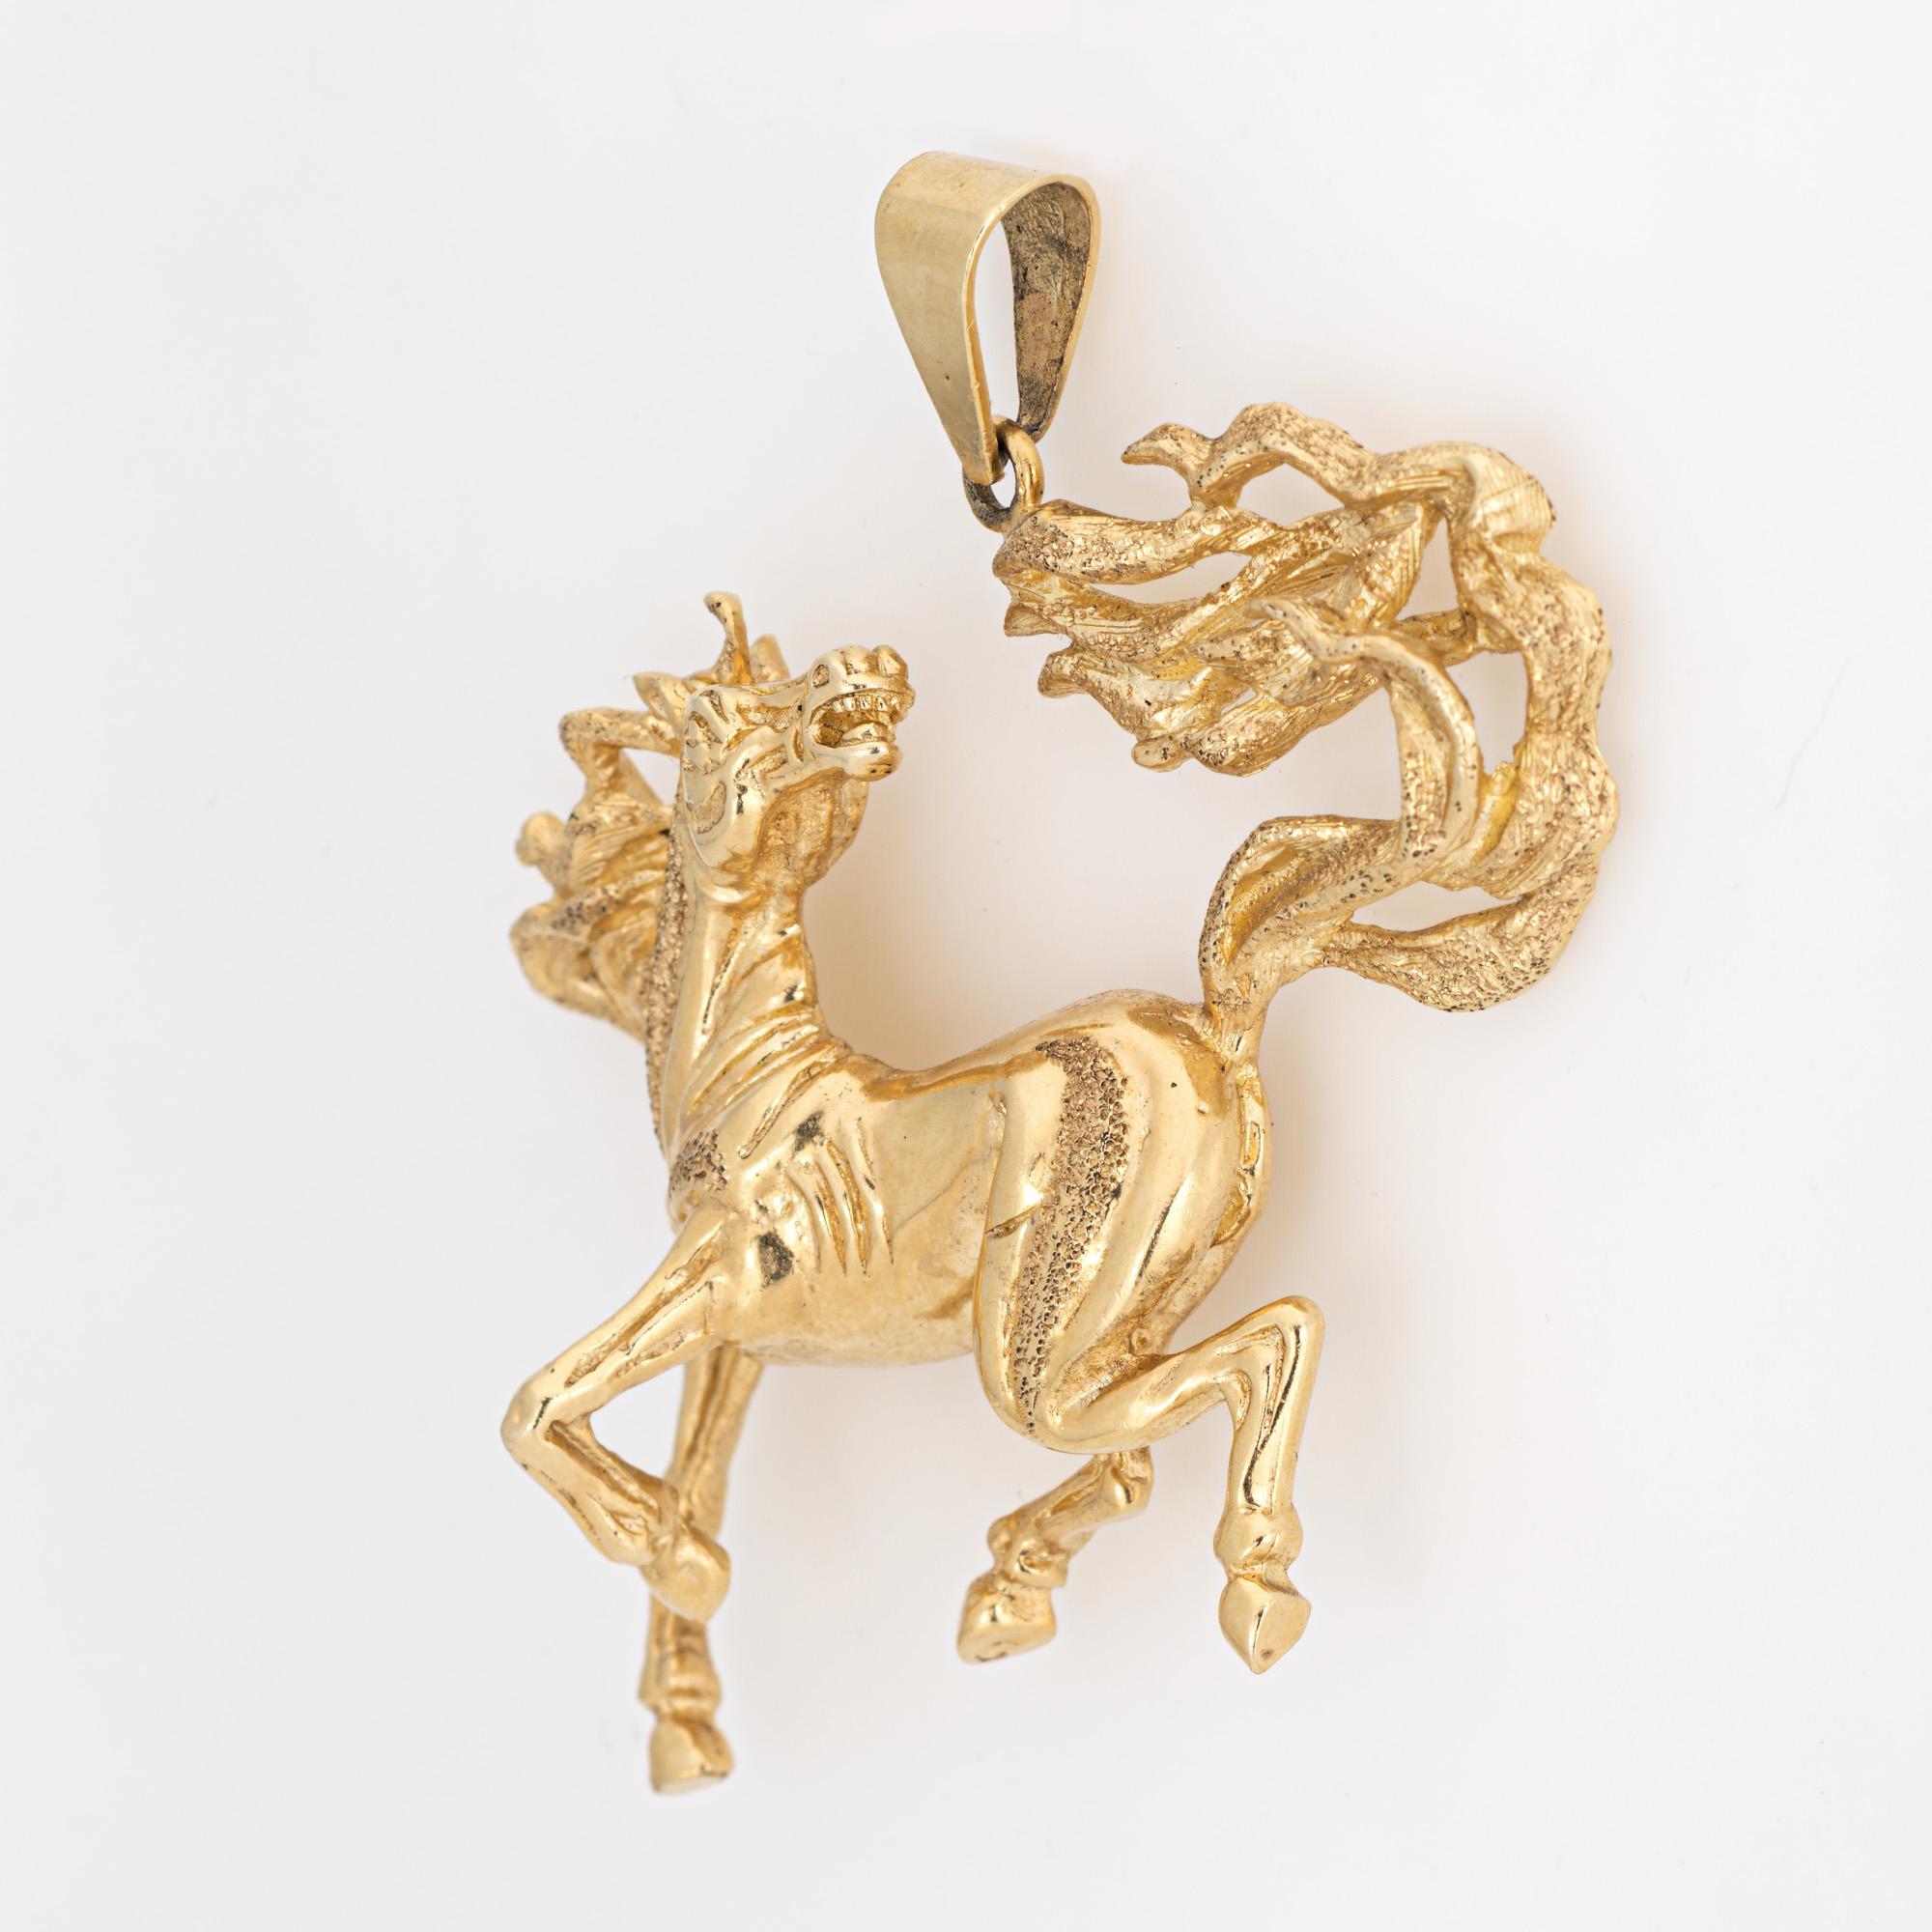 Pendentif vintage finement détaillé en or jaune 14 carats représentant un cheval sauvage (vers les années 1970-1980).  

Capturant l'esprit indompté du majestueux cheval sauvage, le pendentif est magnifiquement détaillé et met en valeur la forme